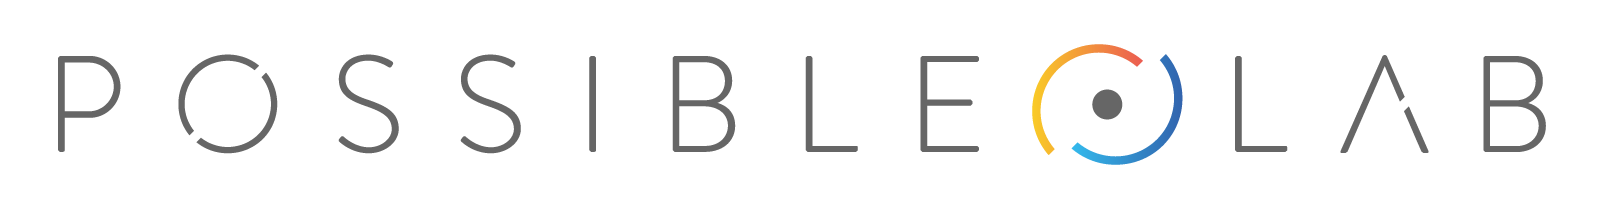 PossibleLab logo